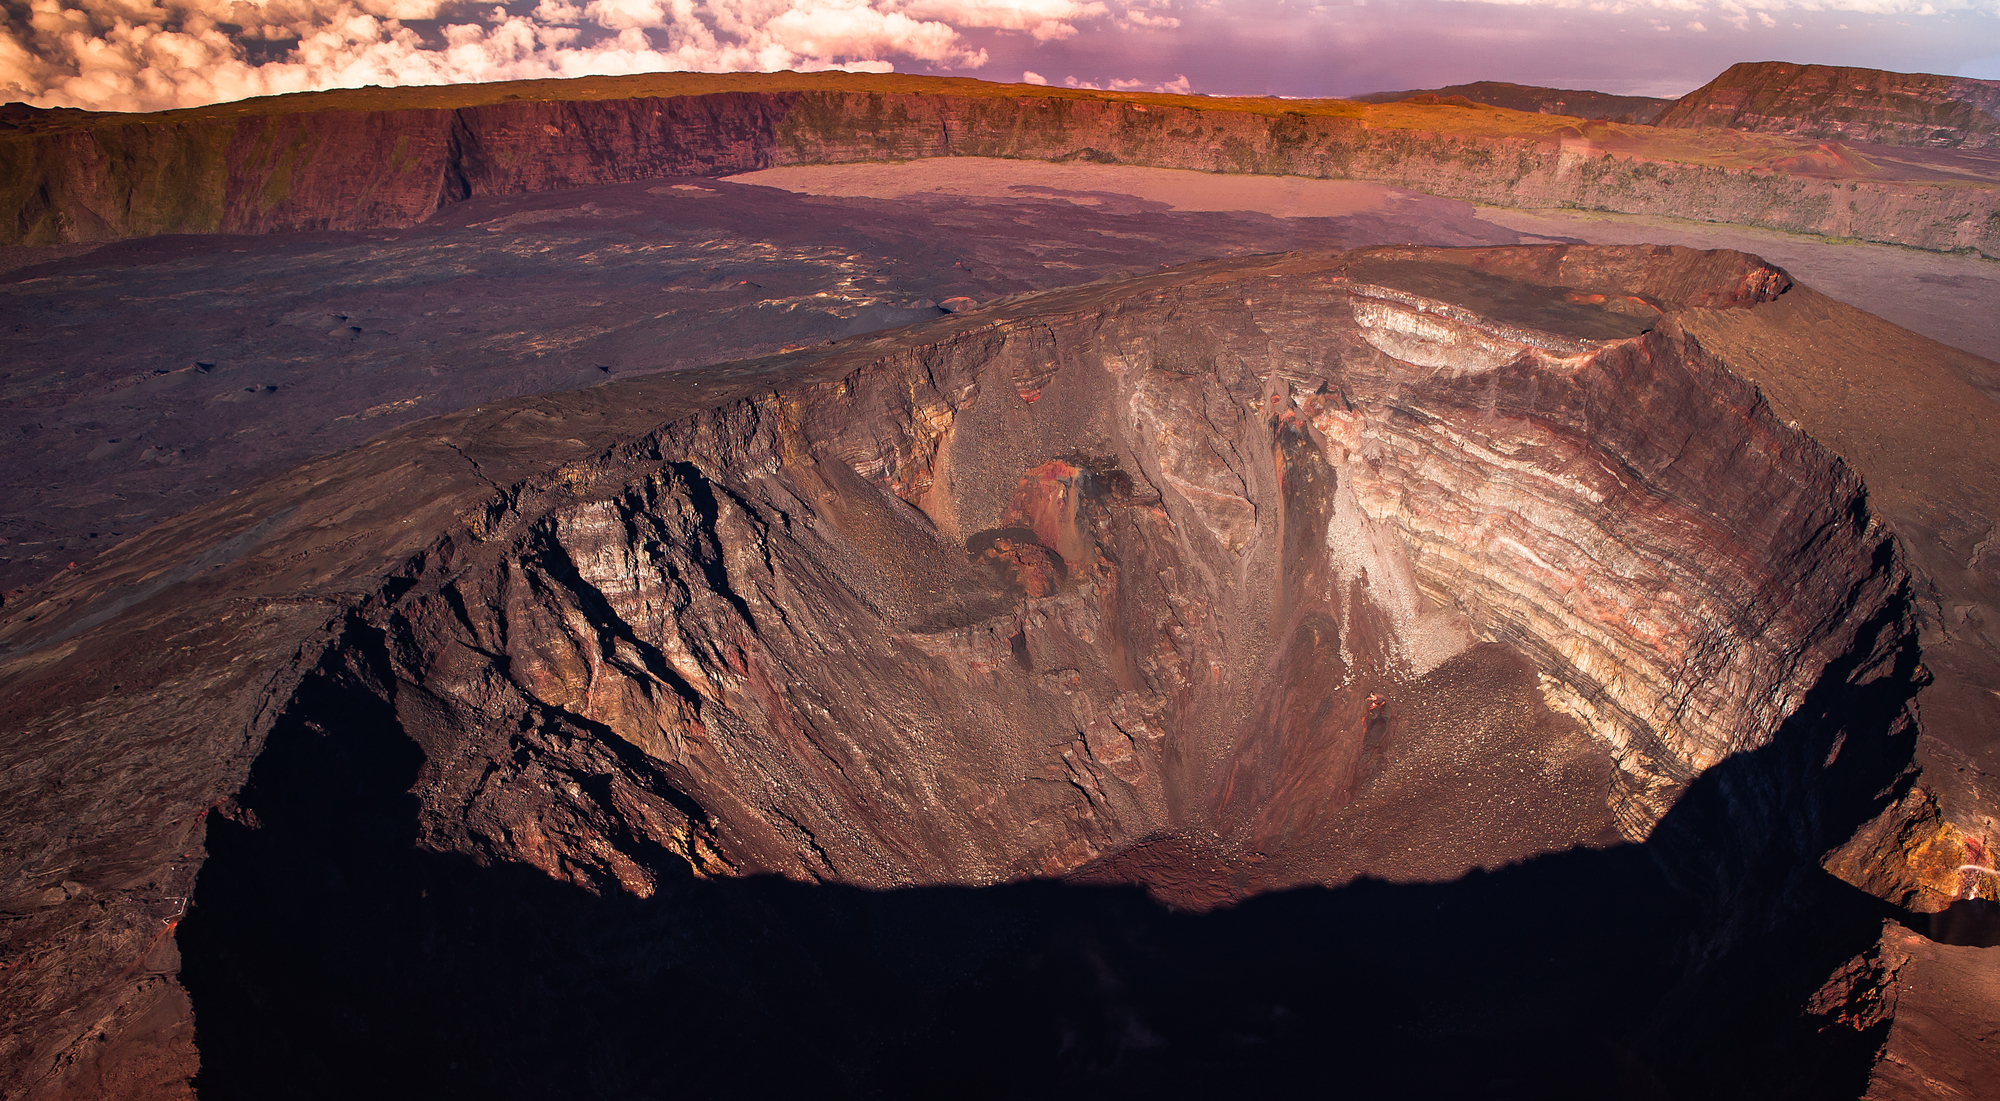 Le Piton de la Fournaise, volcan emblématique de l'île de la Réunion - Crédit photo Depositphotos